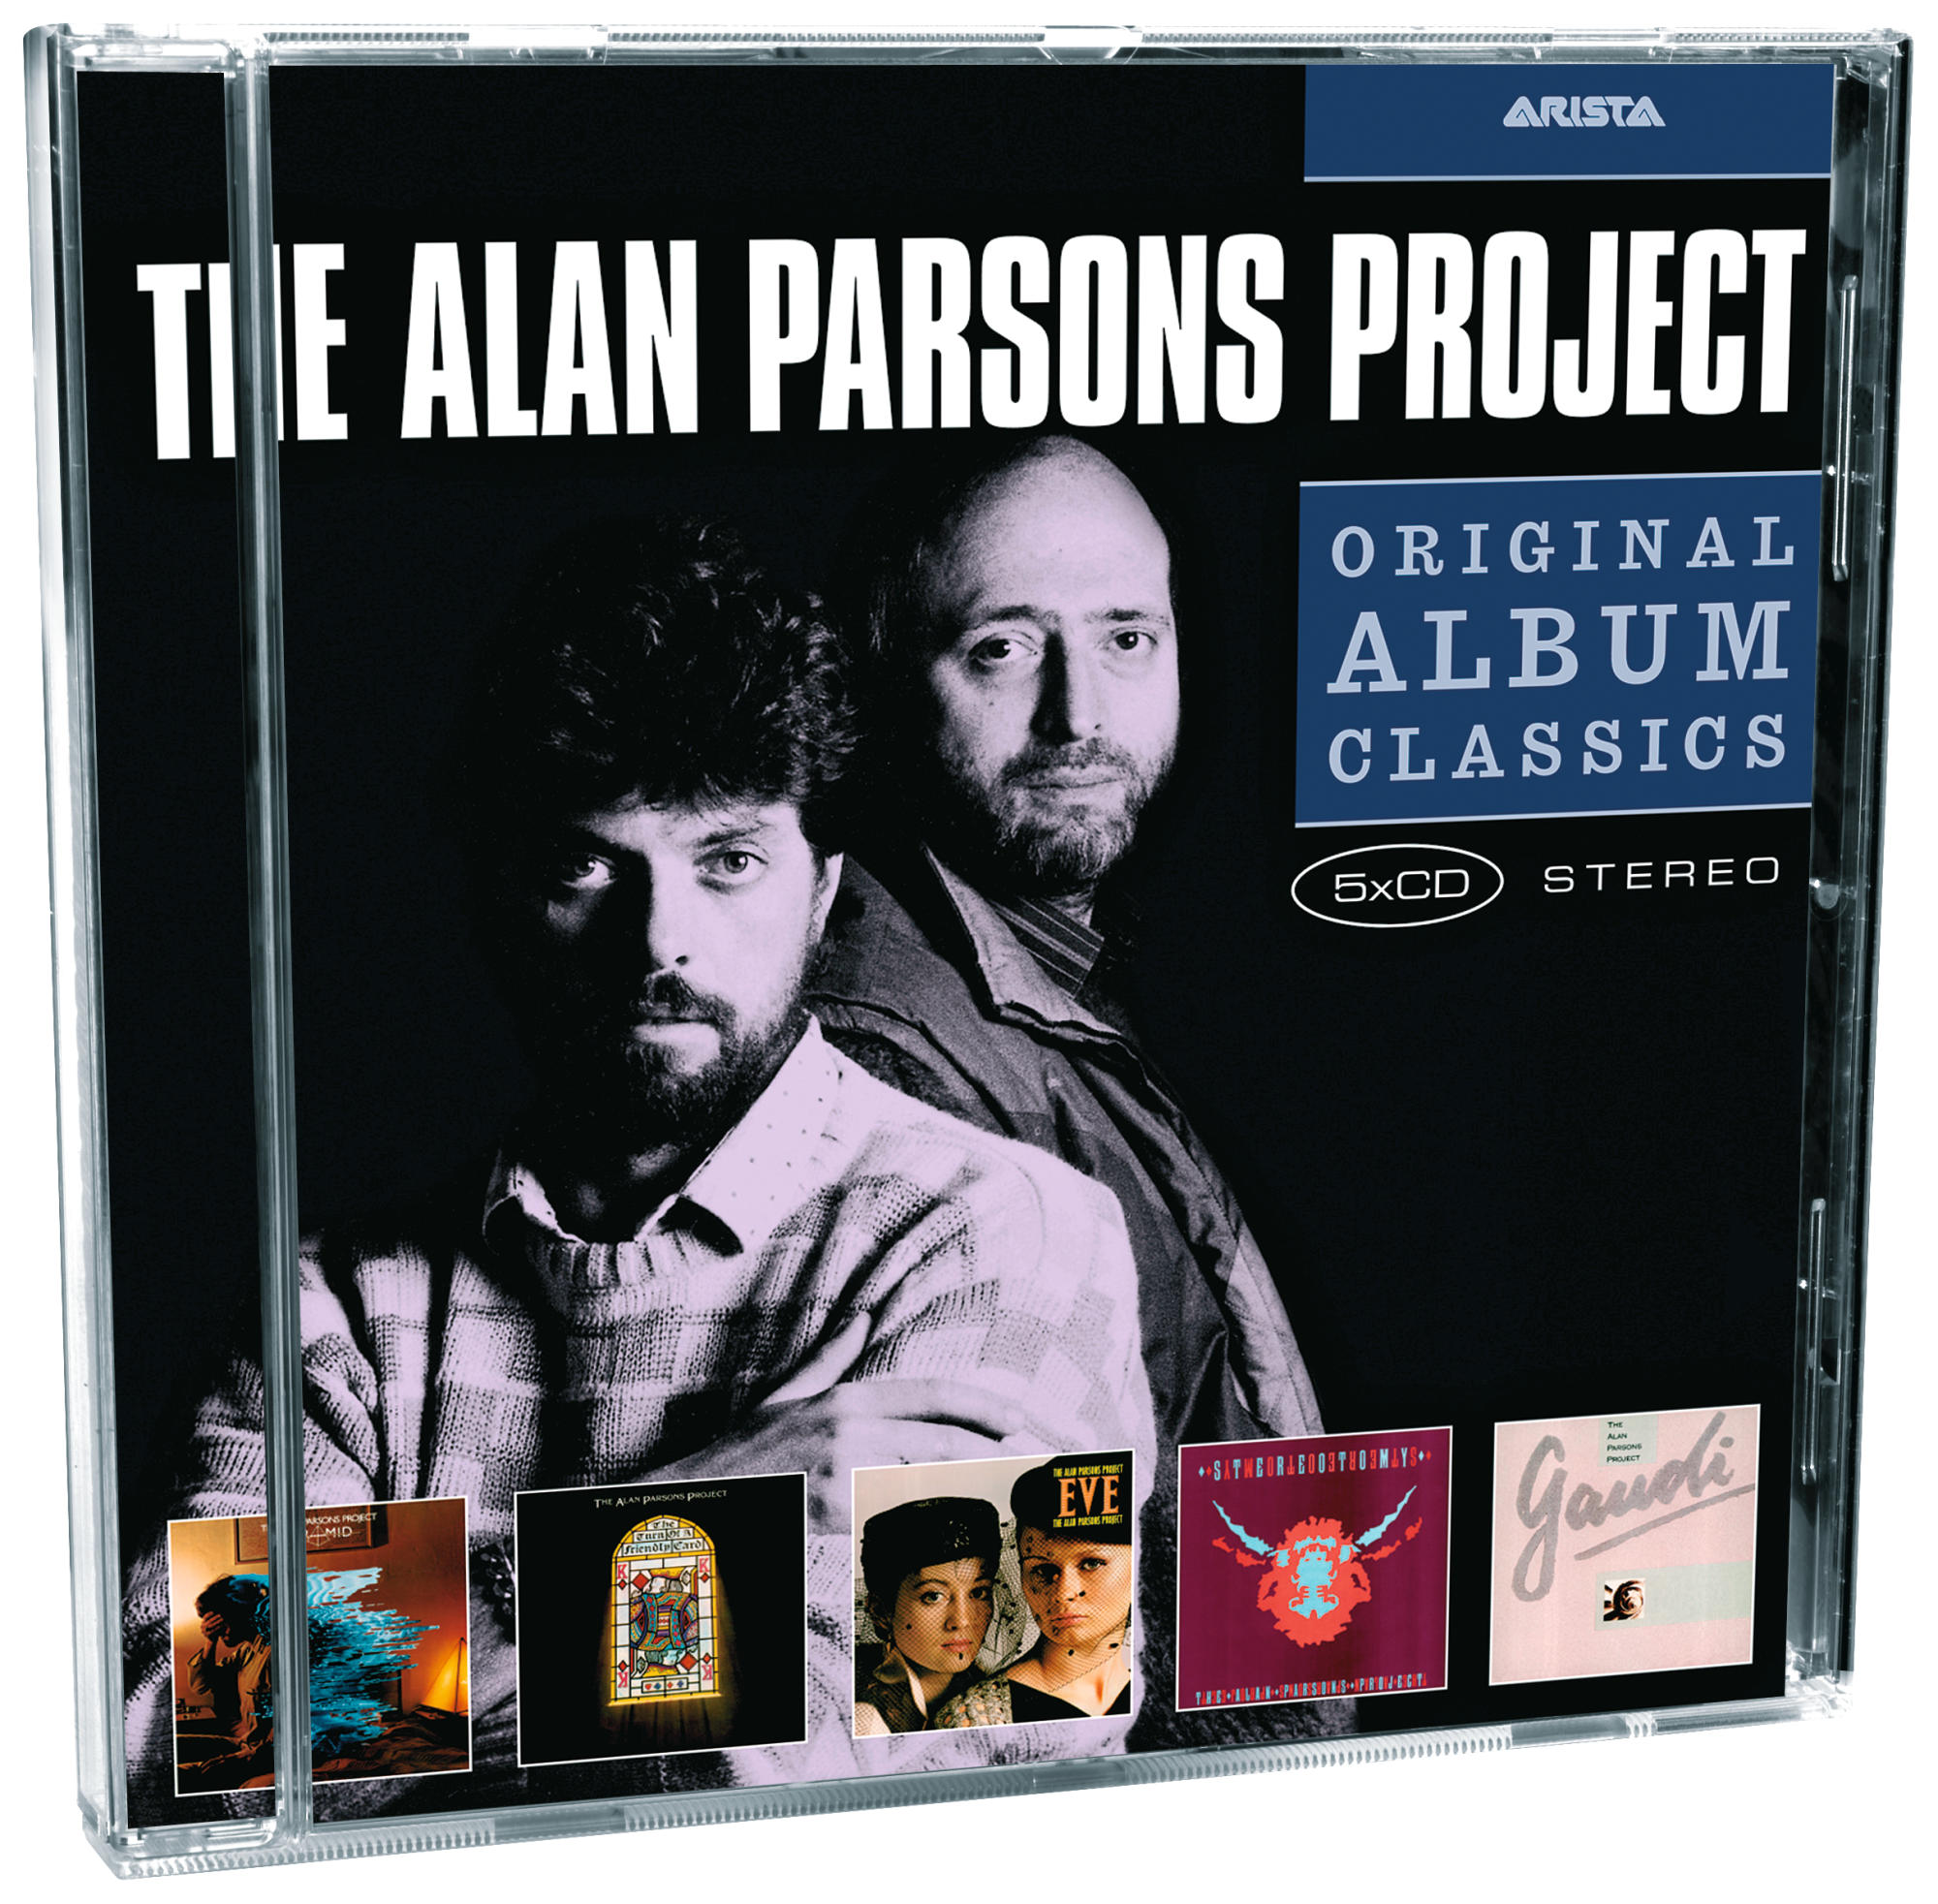 - Alan Project (CD) Classics The Parsons Album Original -